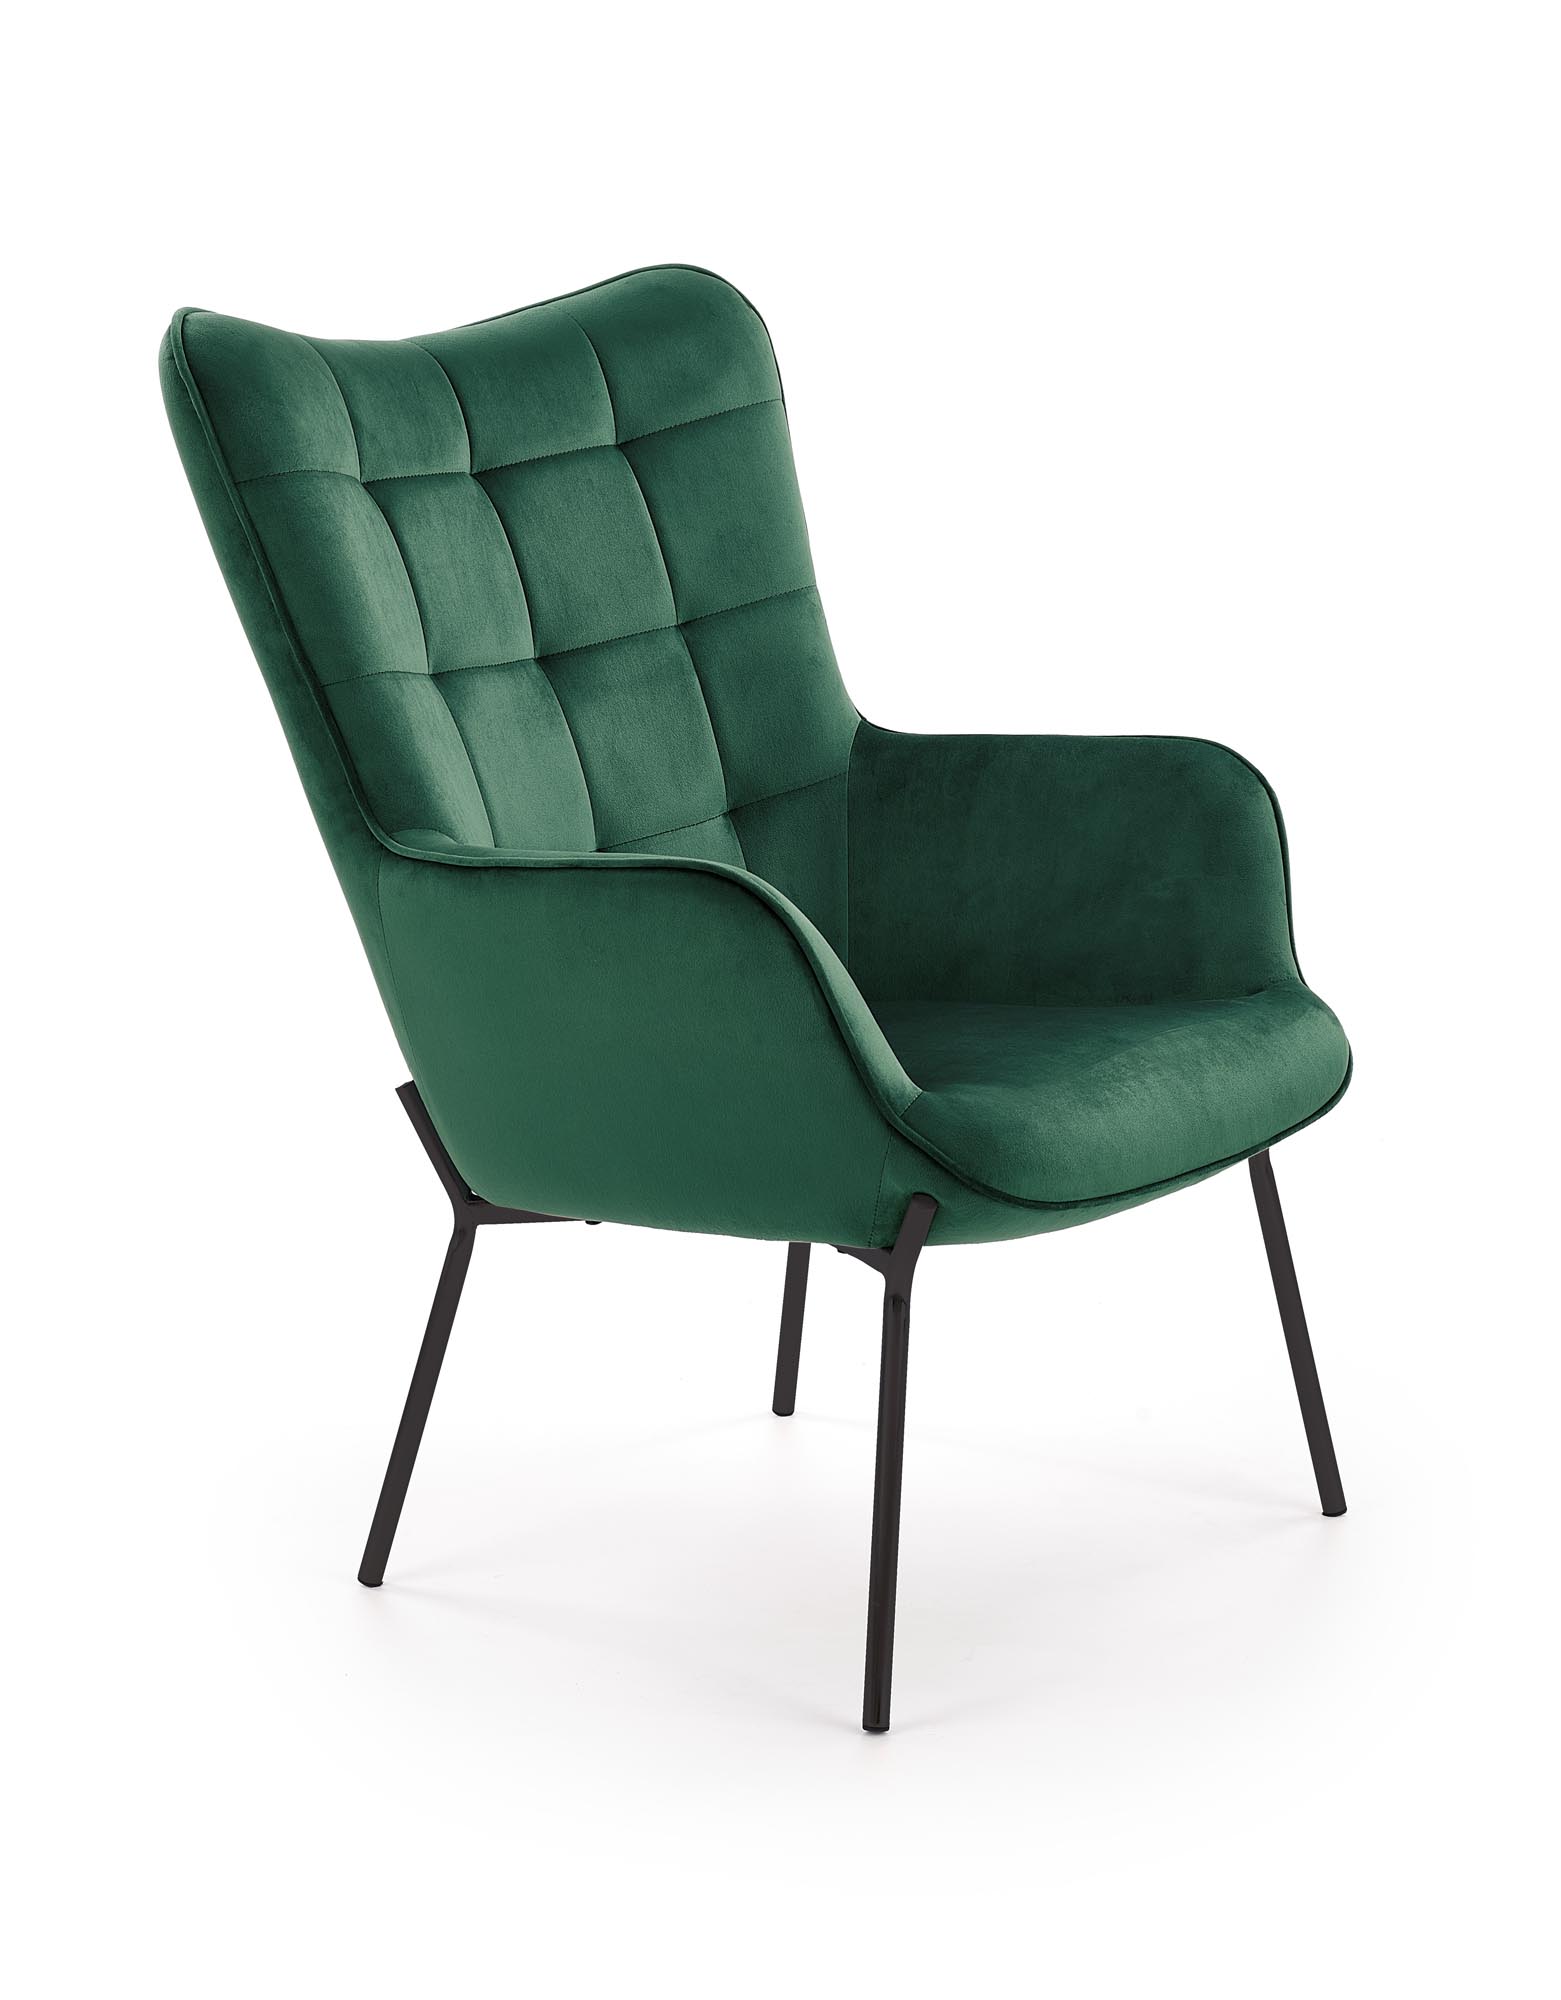 CASTEL fotel wypoczynkowy czarny / ciemny zielony castel fotel wypoczynkowy czarny / ciemny zielony